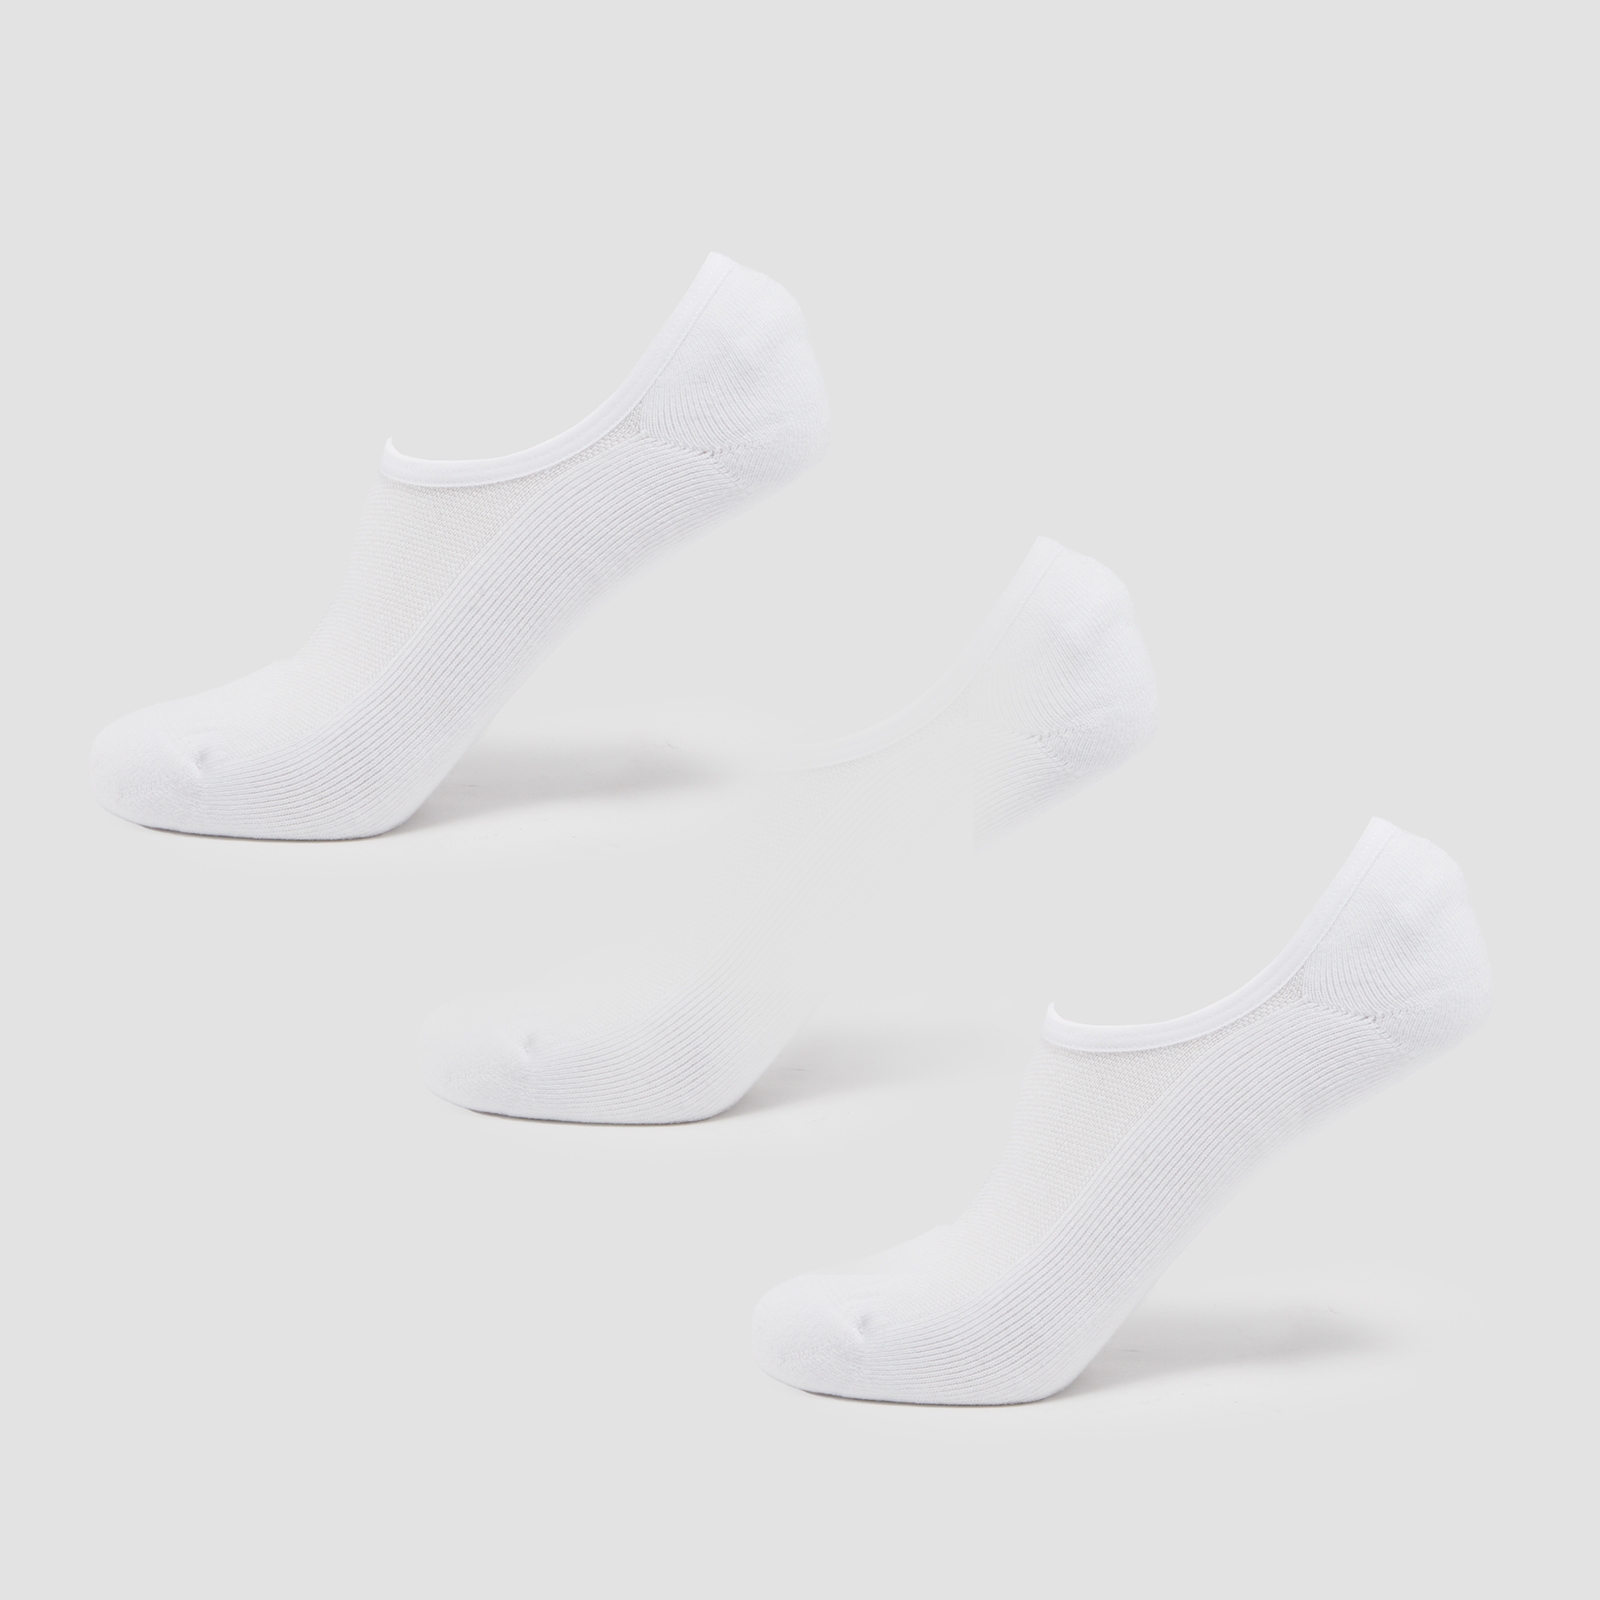 Image of MP Unisex Invisible Socks (3 Pack) - White - UK 2-5